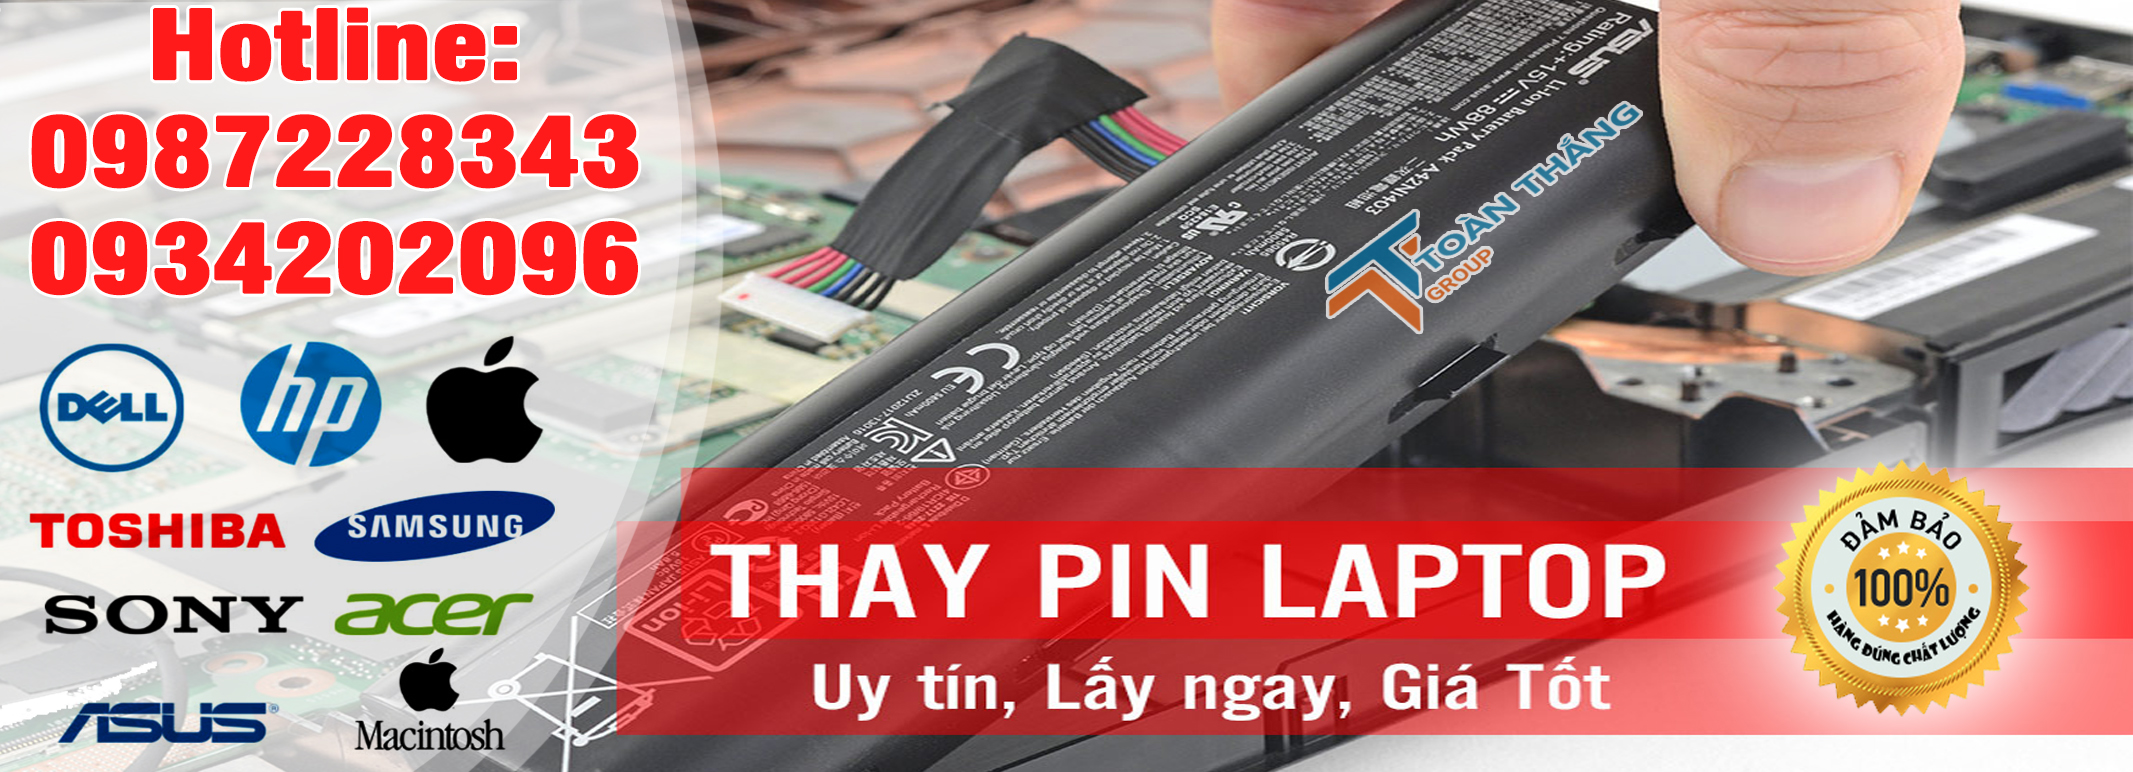 Công Ty Dịch Vụ Thay Pin Laptop Tận Nơi Quận Thủ Đức Uy Tín Nhanh